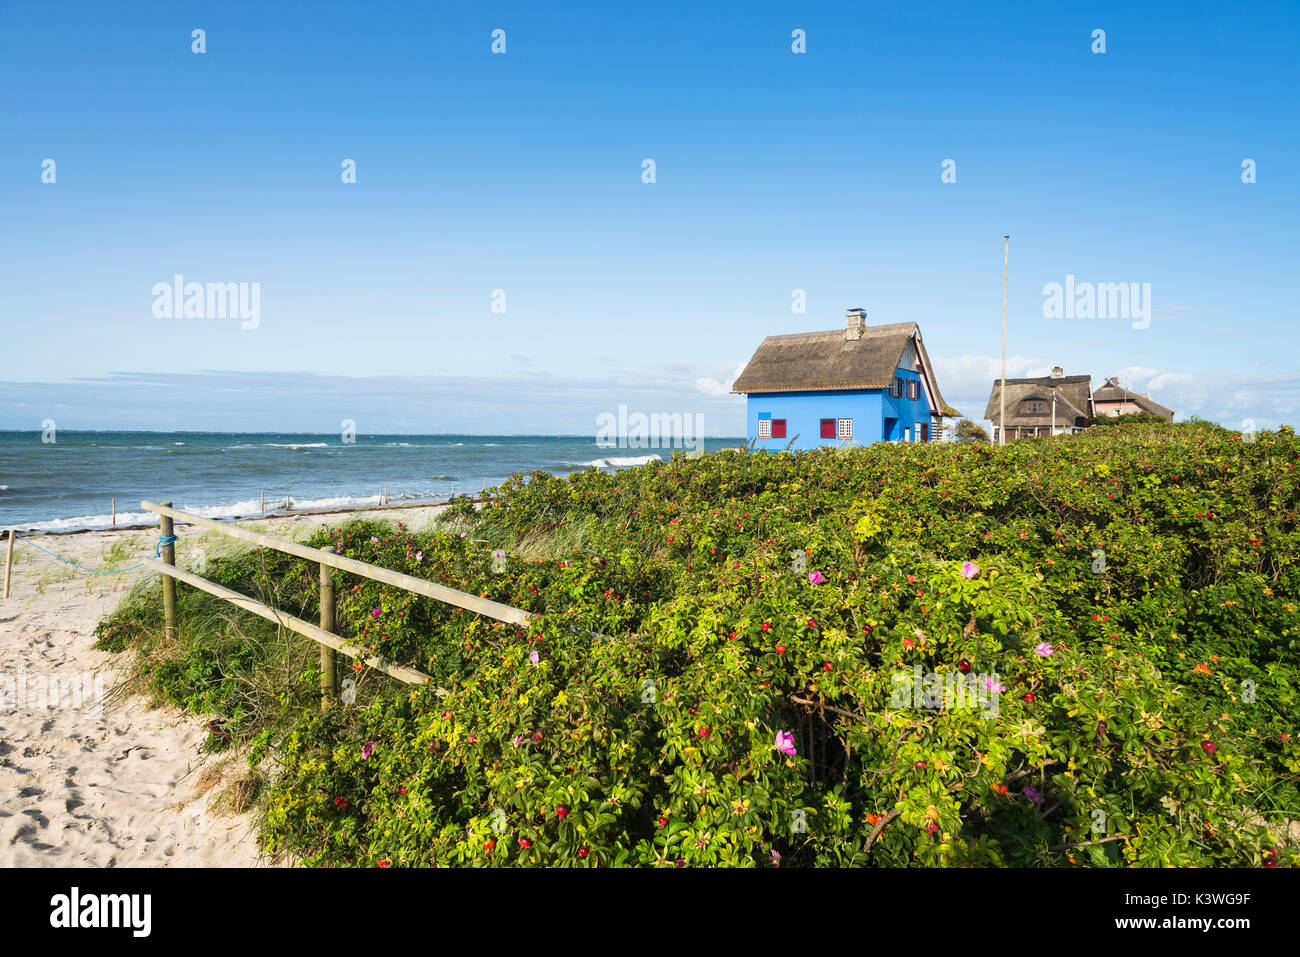 Storica spiaggia blu casa con tetto di paglia e cane cespugli di rose nella riserva naturale sulla penisola di graswarder a heiligenhafen, Germania Foto Stock